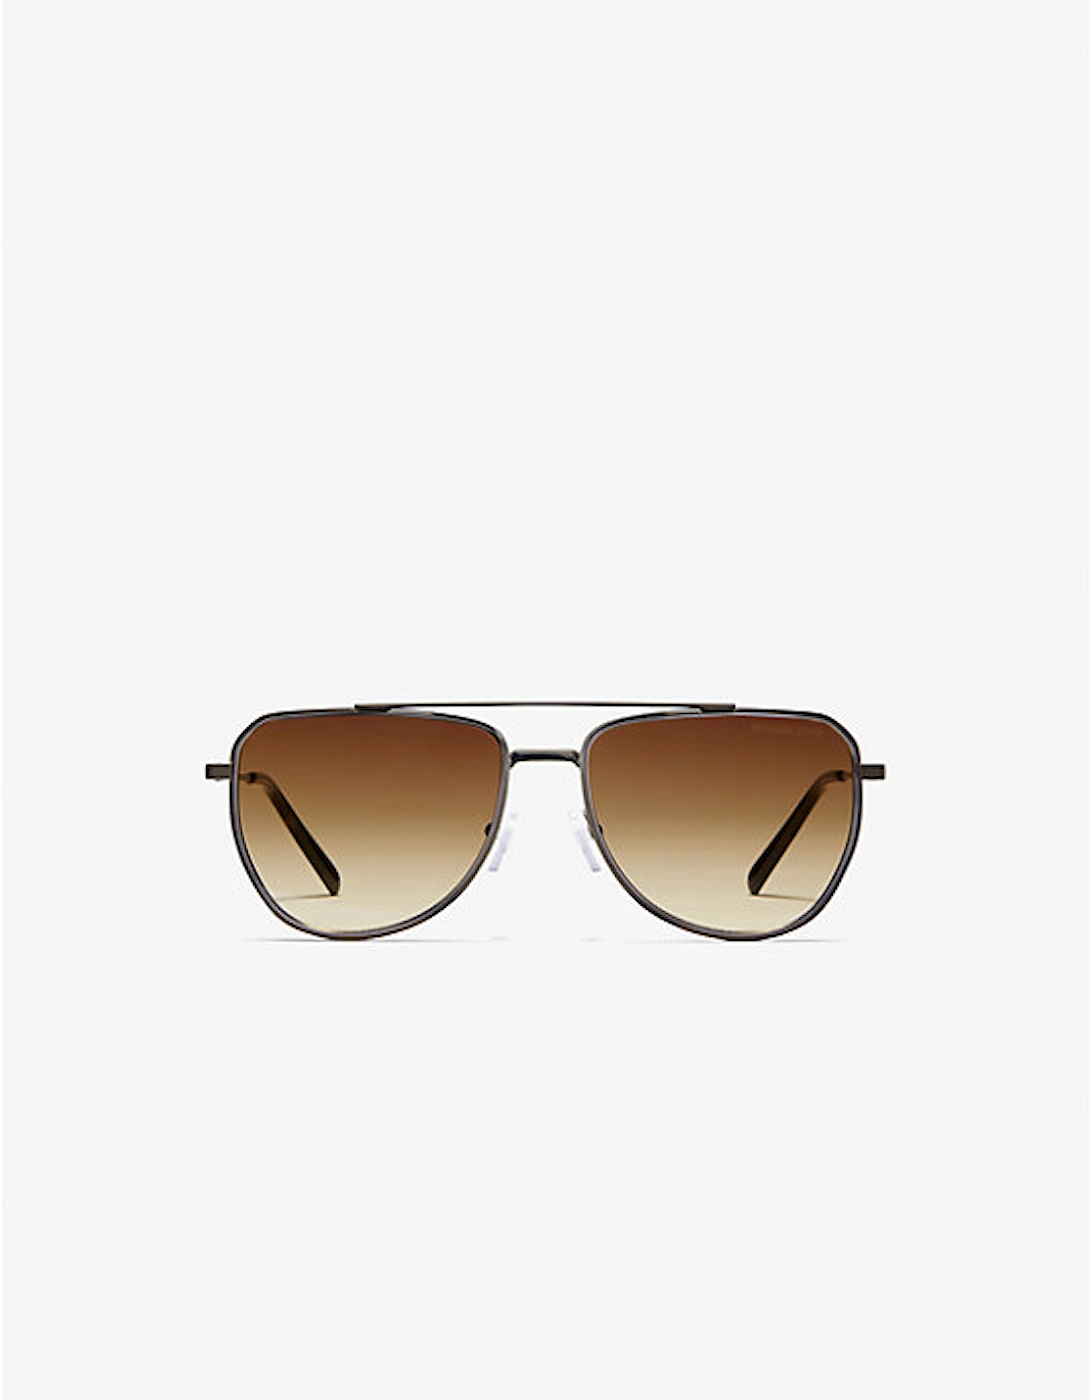 Whistler Sunglasses, 2 of 1